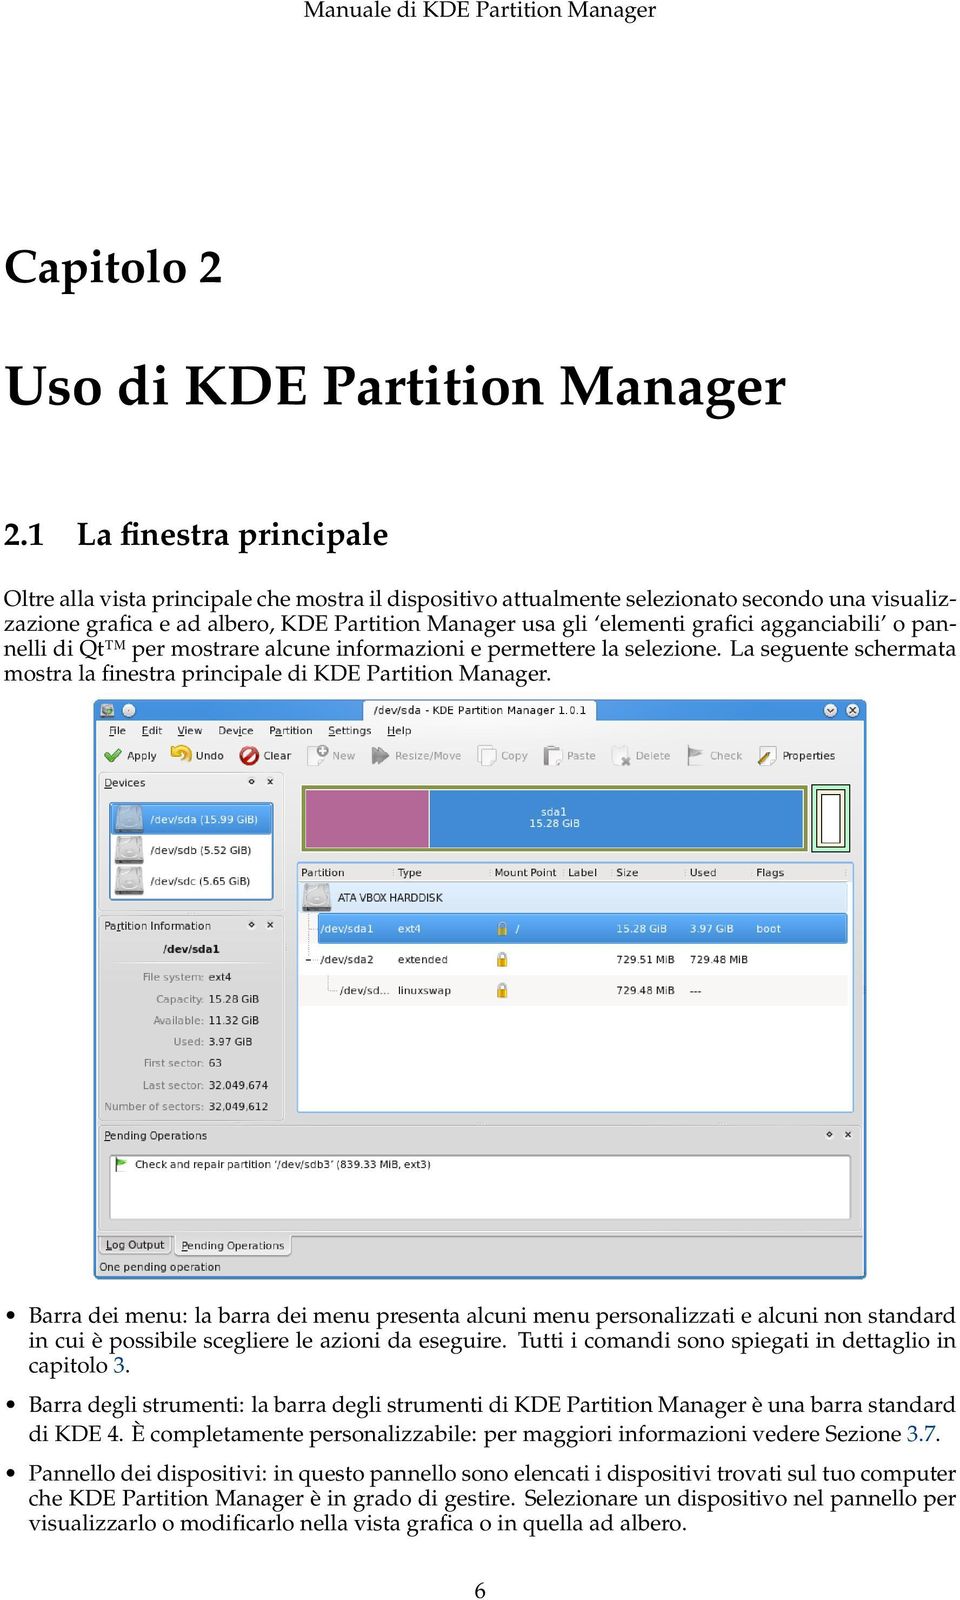 agganciabili o pannelli di Qt per mostrare alcune informazioni e permettere la selezione. La seguente schermata mostra la finestra principale di KDE Partition Manager.